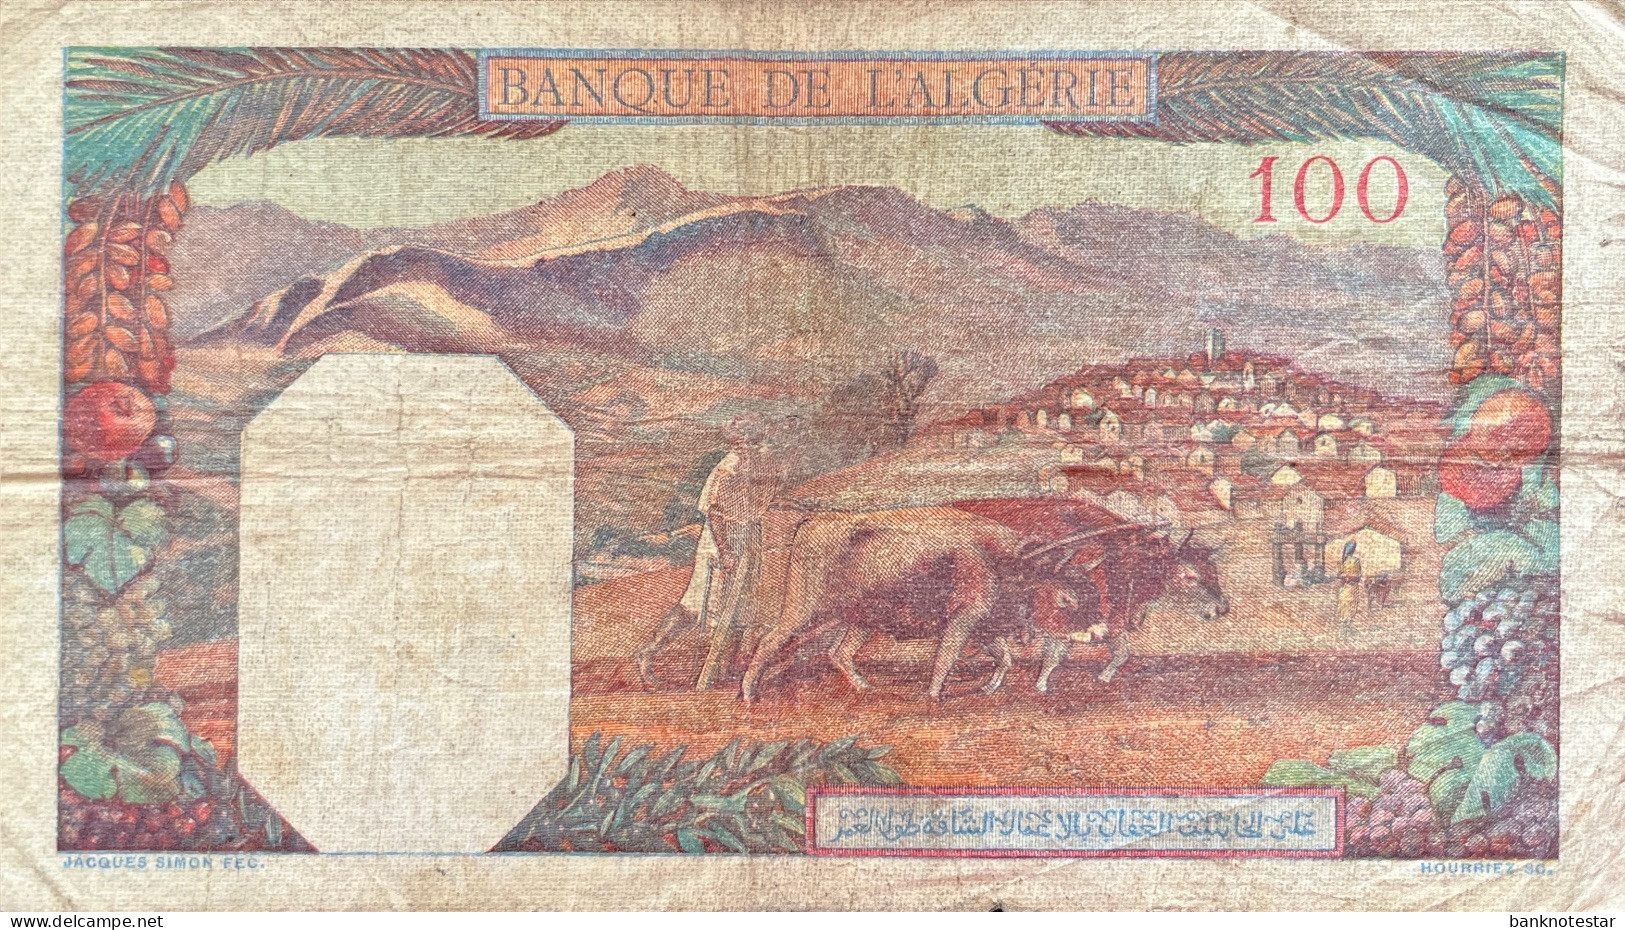 Algeria 100 Francs, P-85 (1940) - Very Good - Algérie